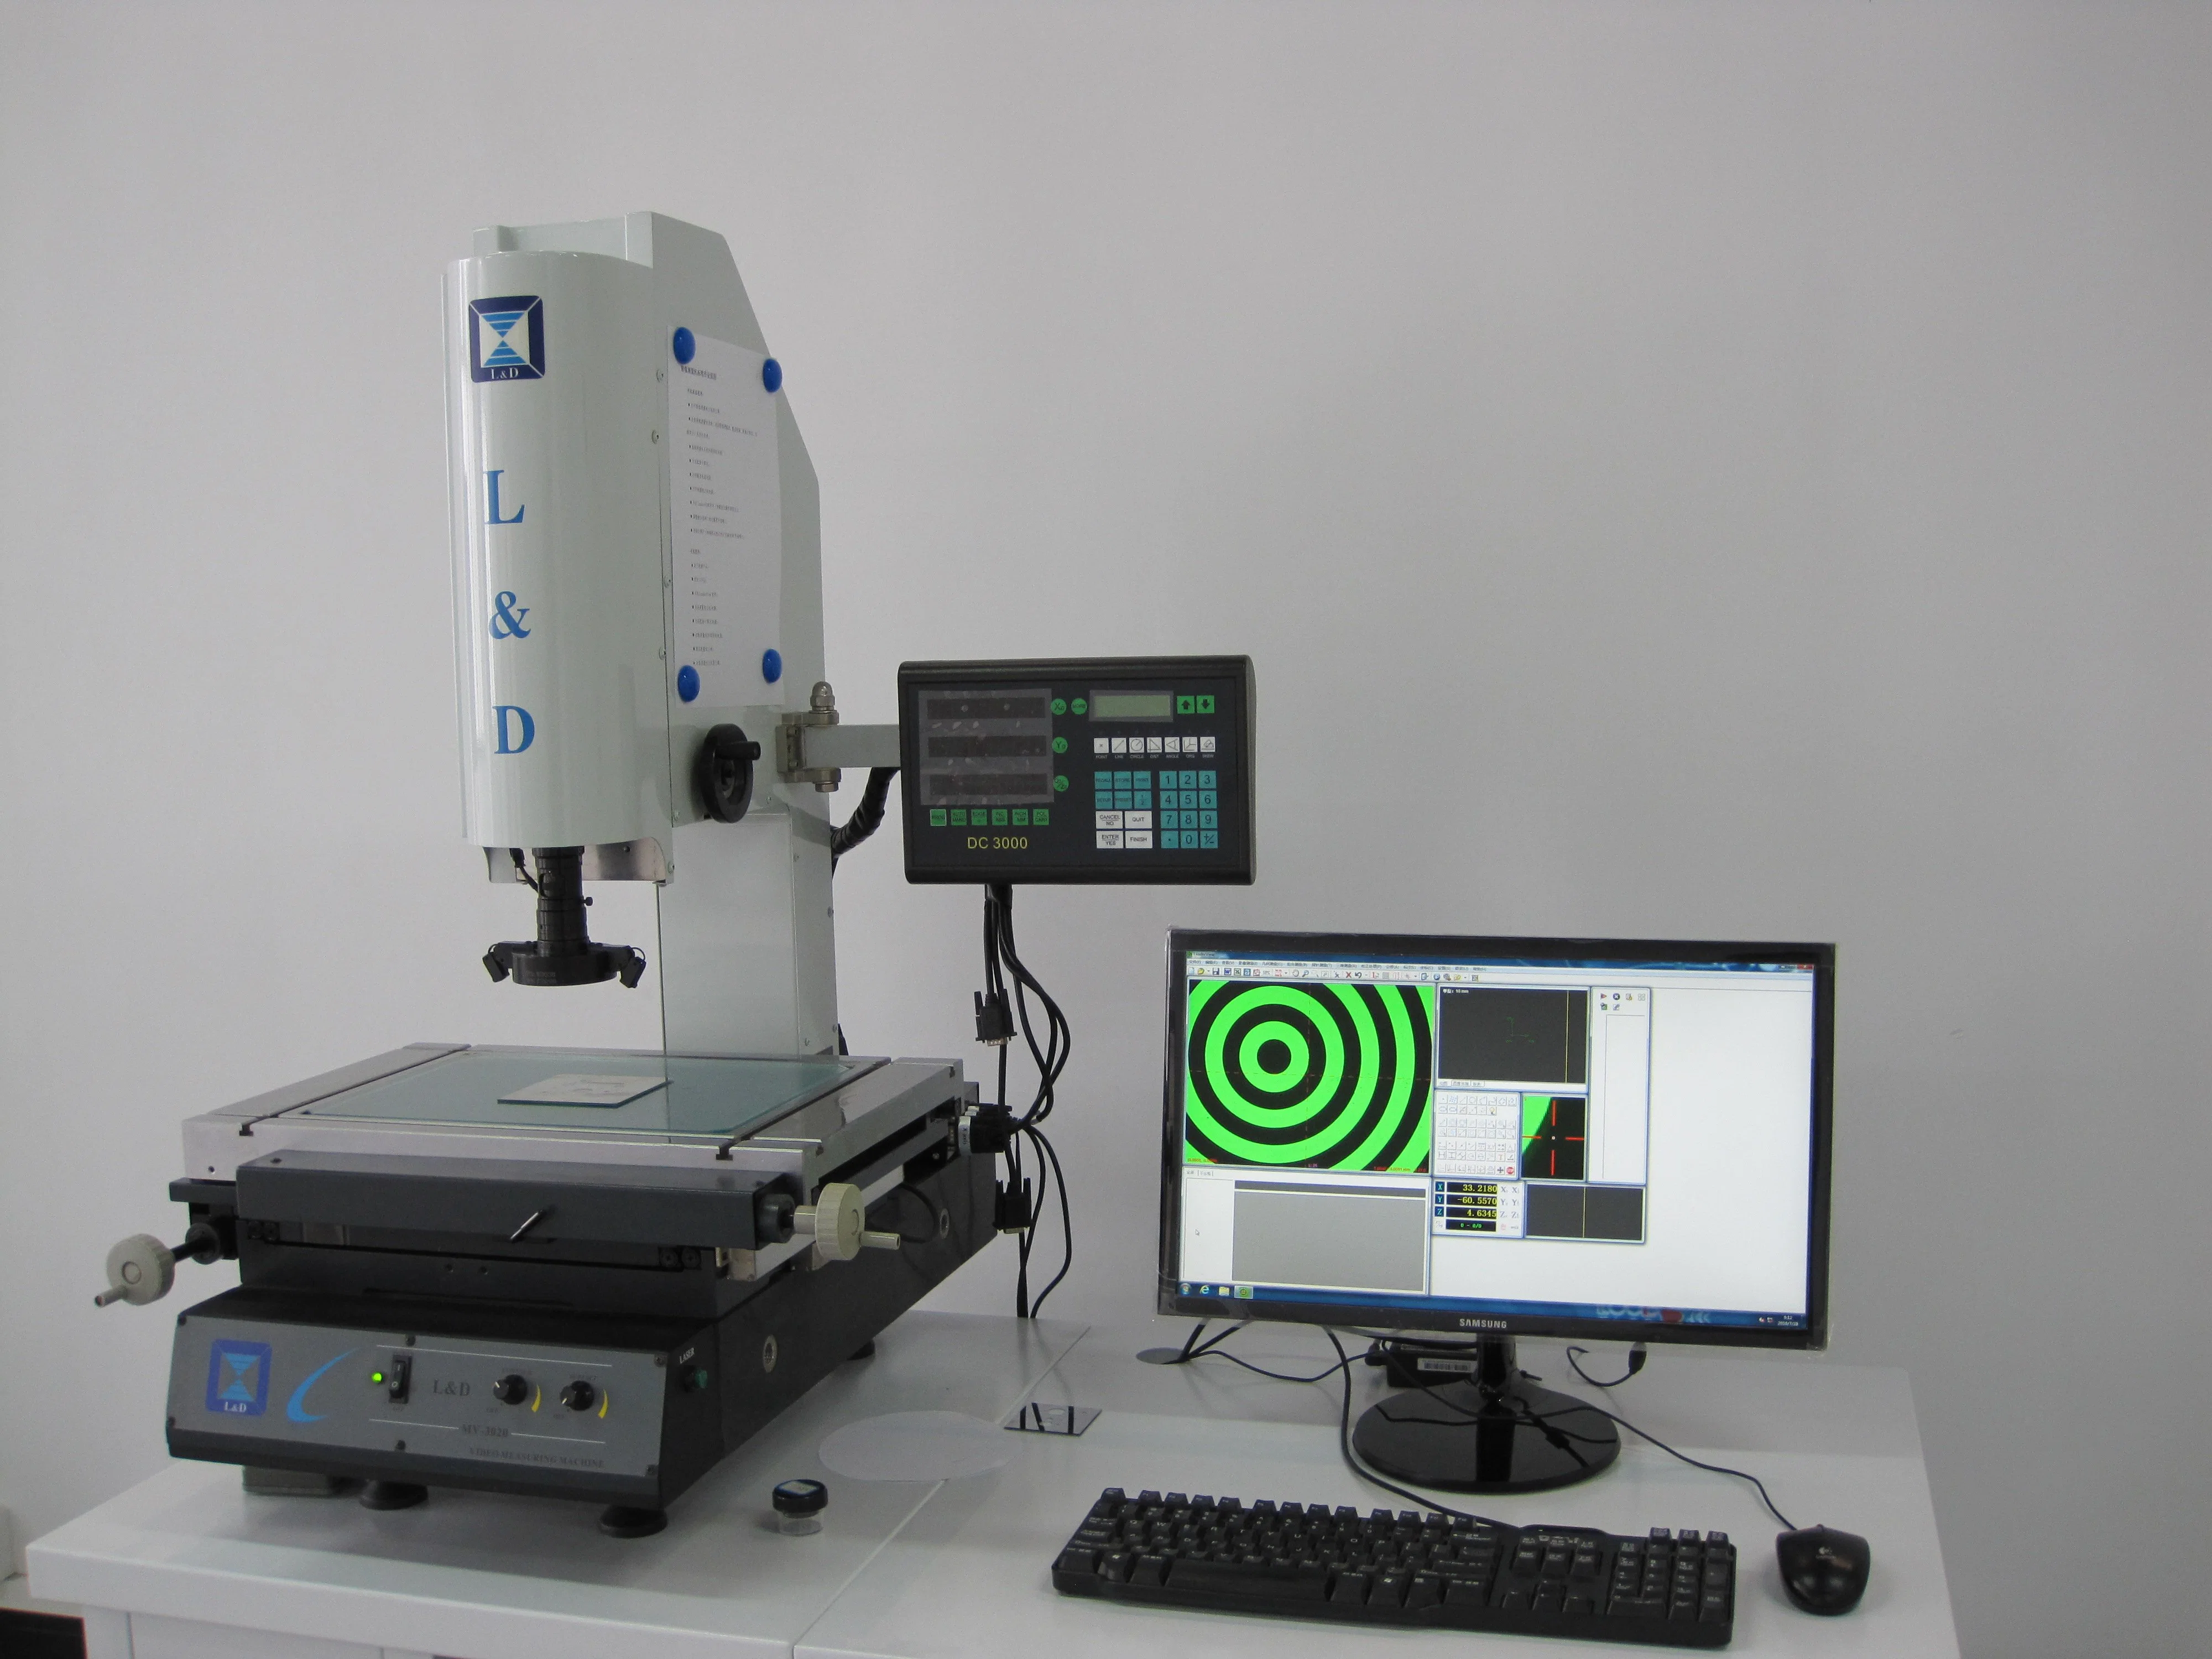 Digital Inspection and Measurement Vision System (EV-4030)